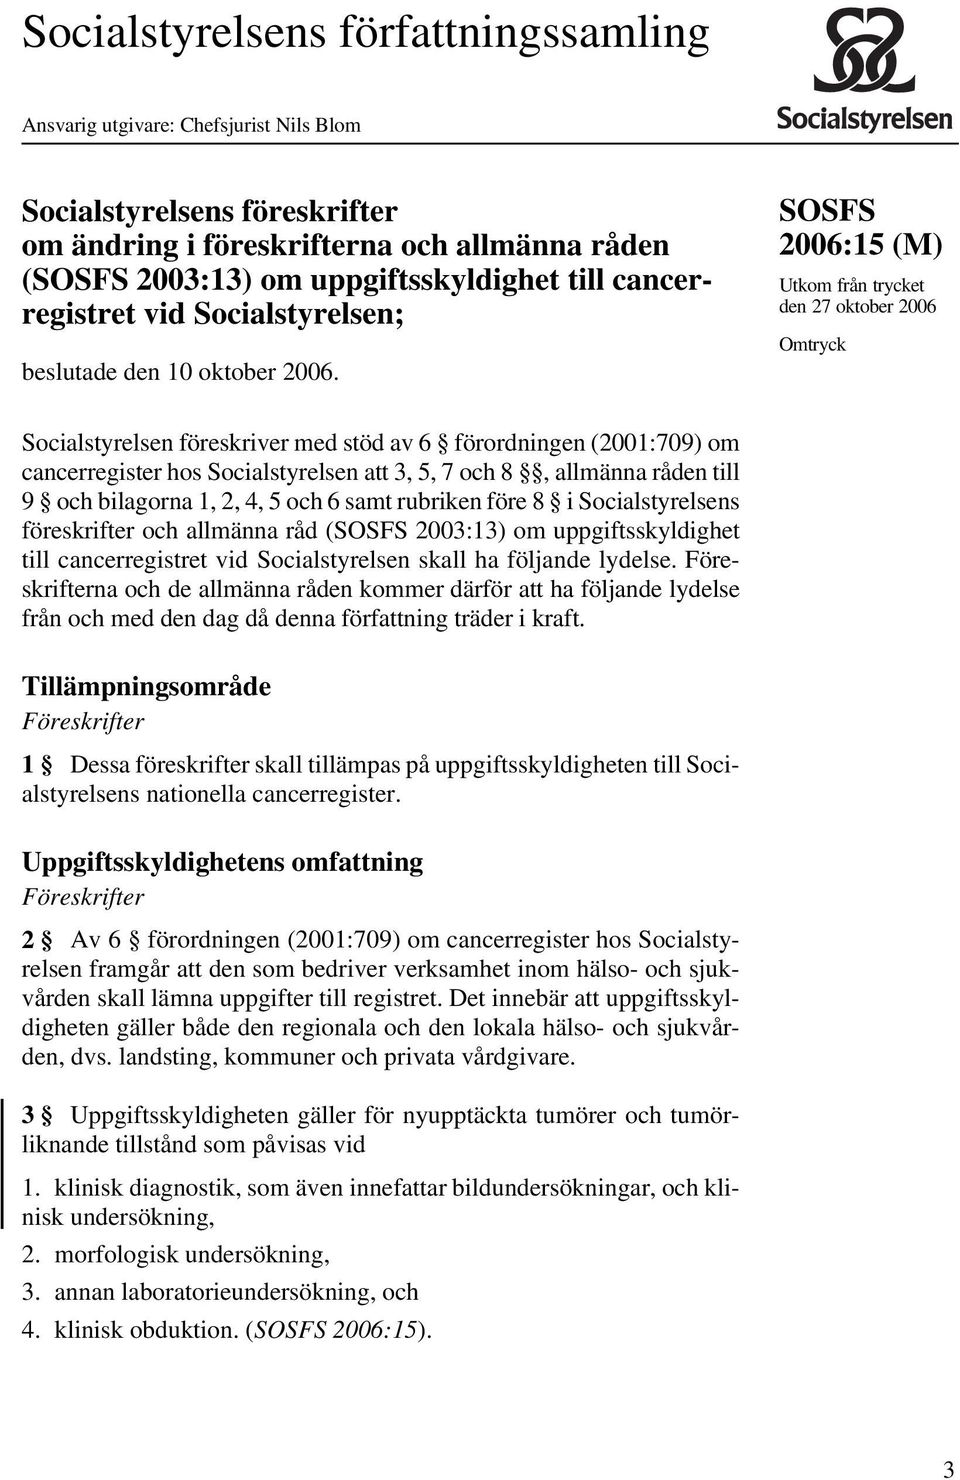 SOSFS (M) Utkom från trycket den 27 oktober 2006 Omtryck Socialstyrelsen föreskriver med stöd av 6 förordningen (2001:709) om cancerregister hos Socialstyrelsen att 3, 5, 7 och 8, allmänna råden till